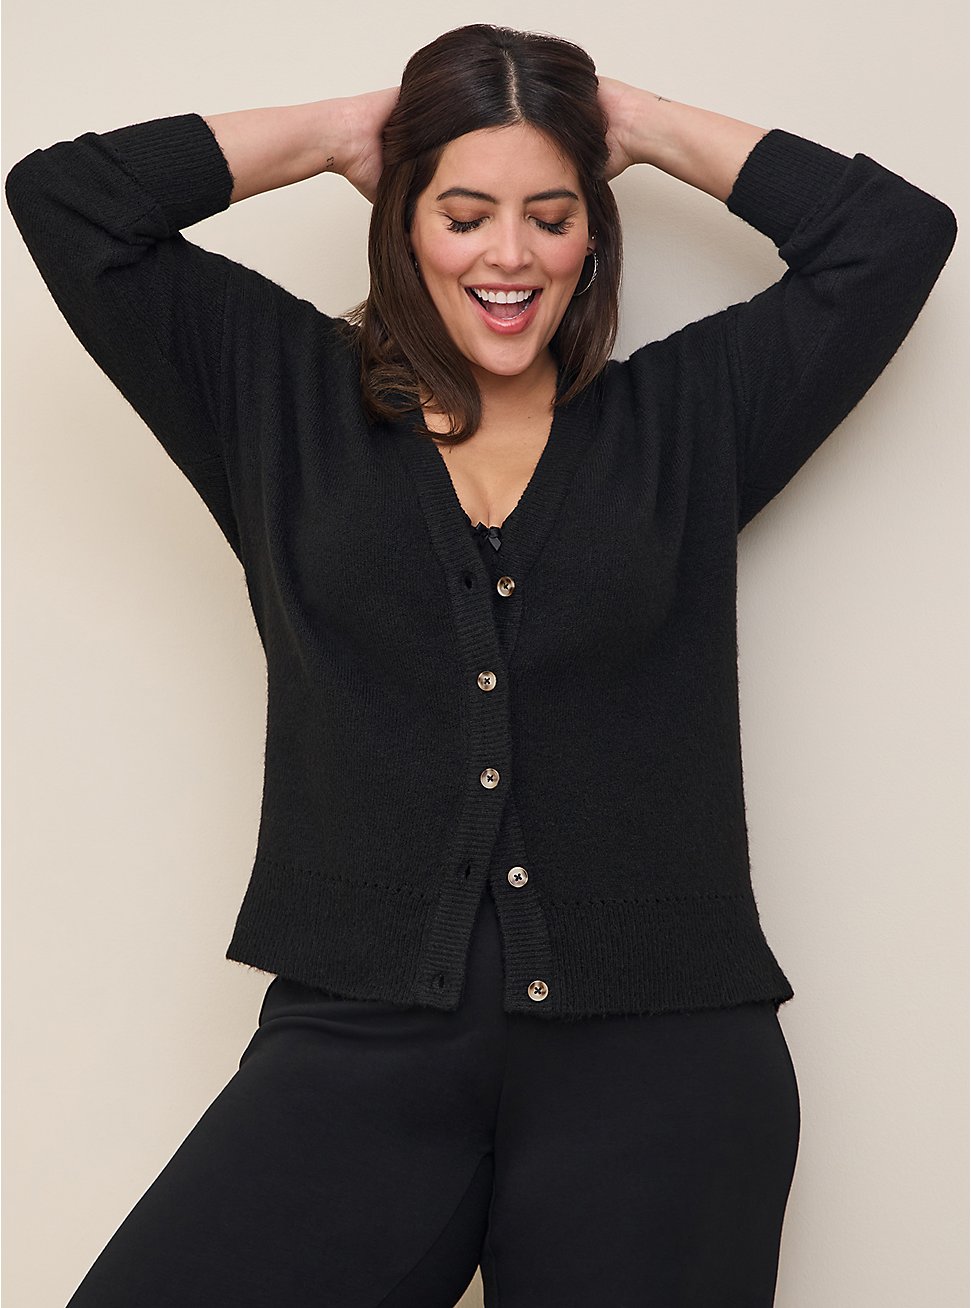 Plus Size Vegan Cashmere Cardigan V-Neck Drop Shoulder Sweater, BLACK, hi-res